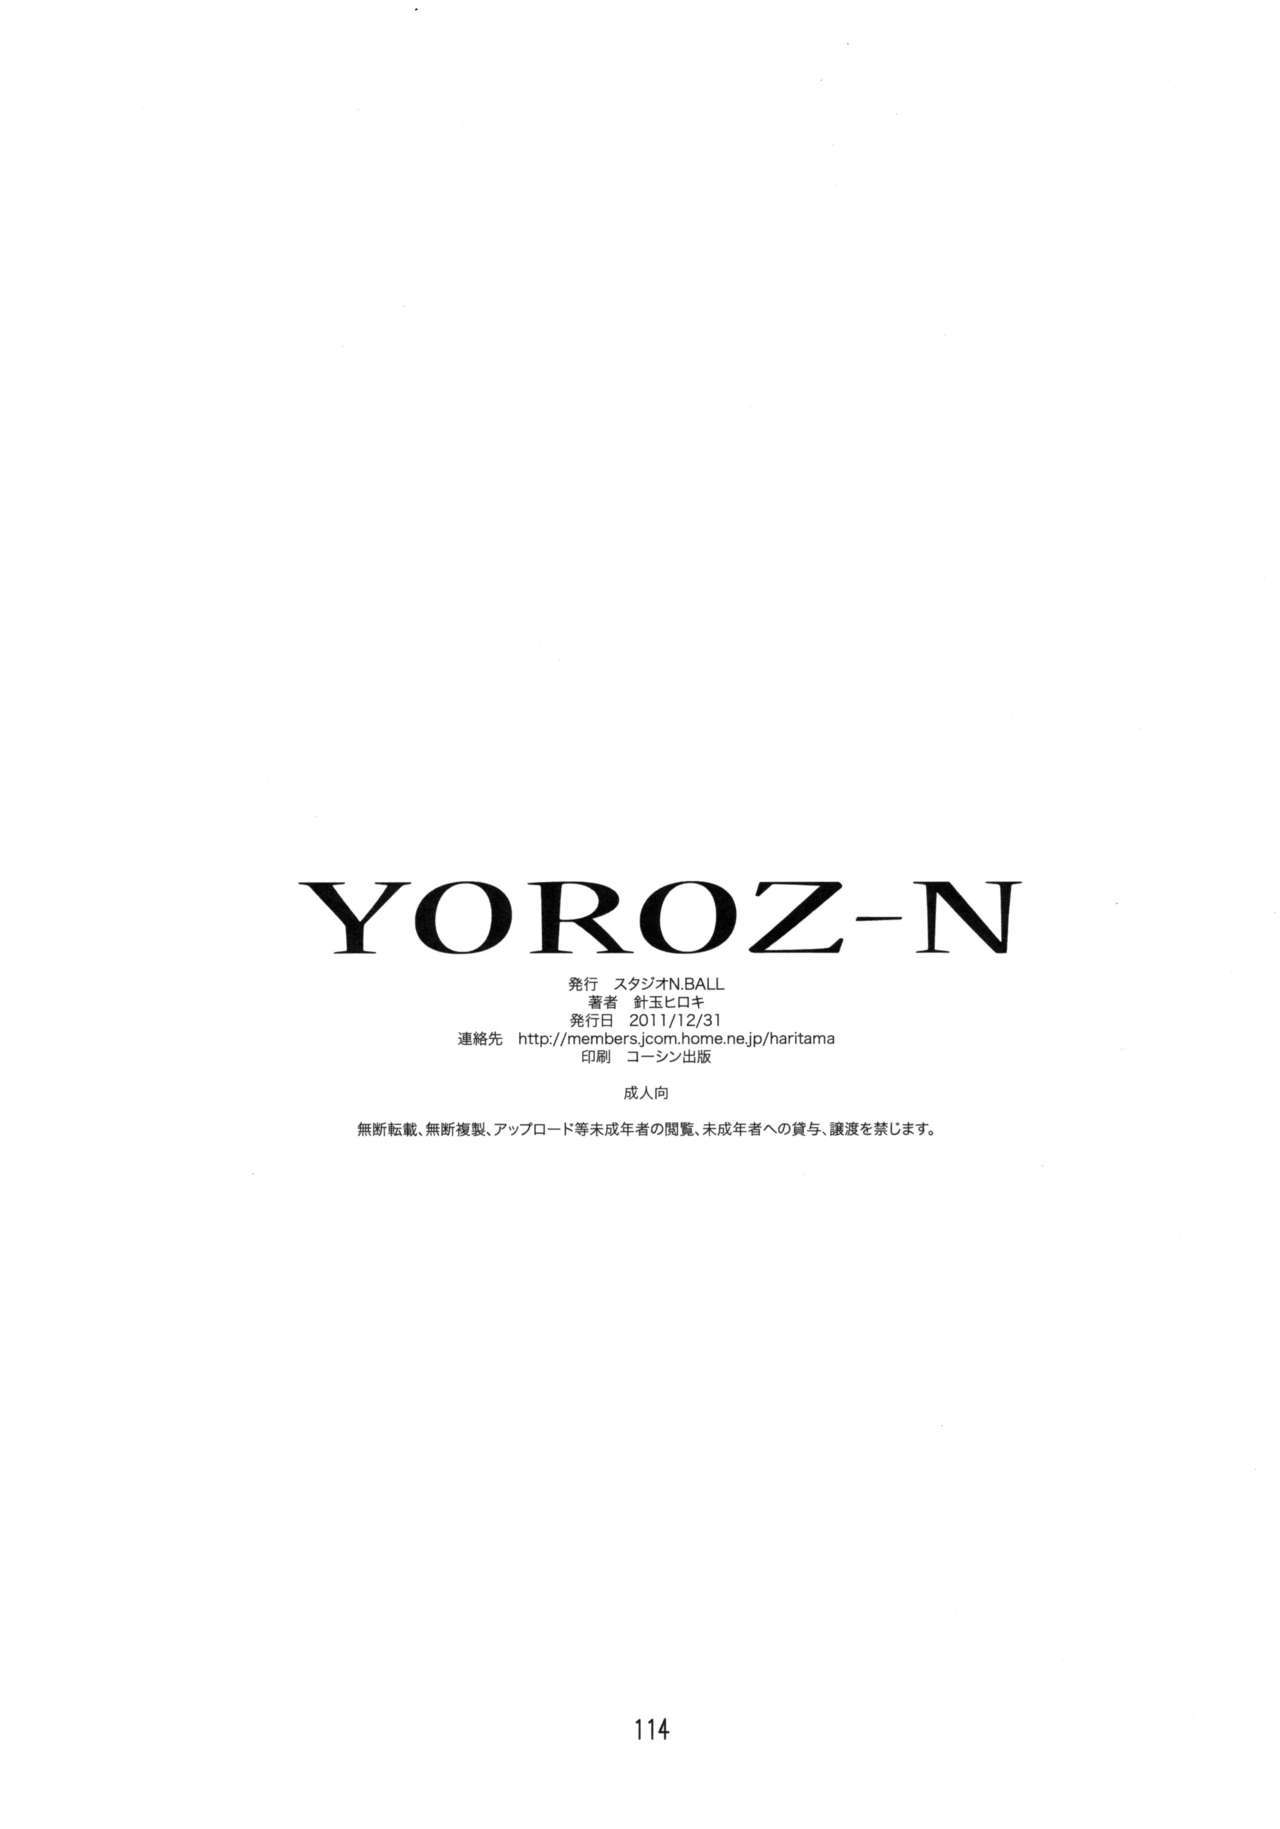 Yoroz-N